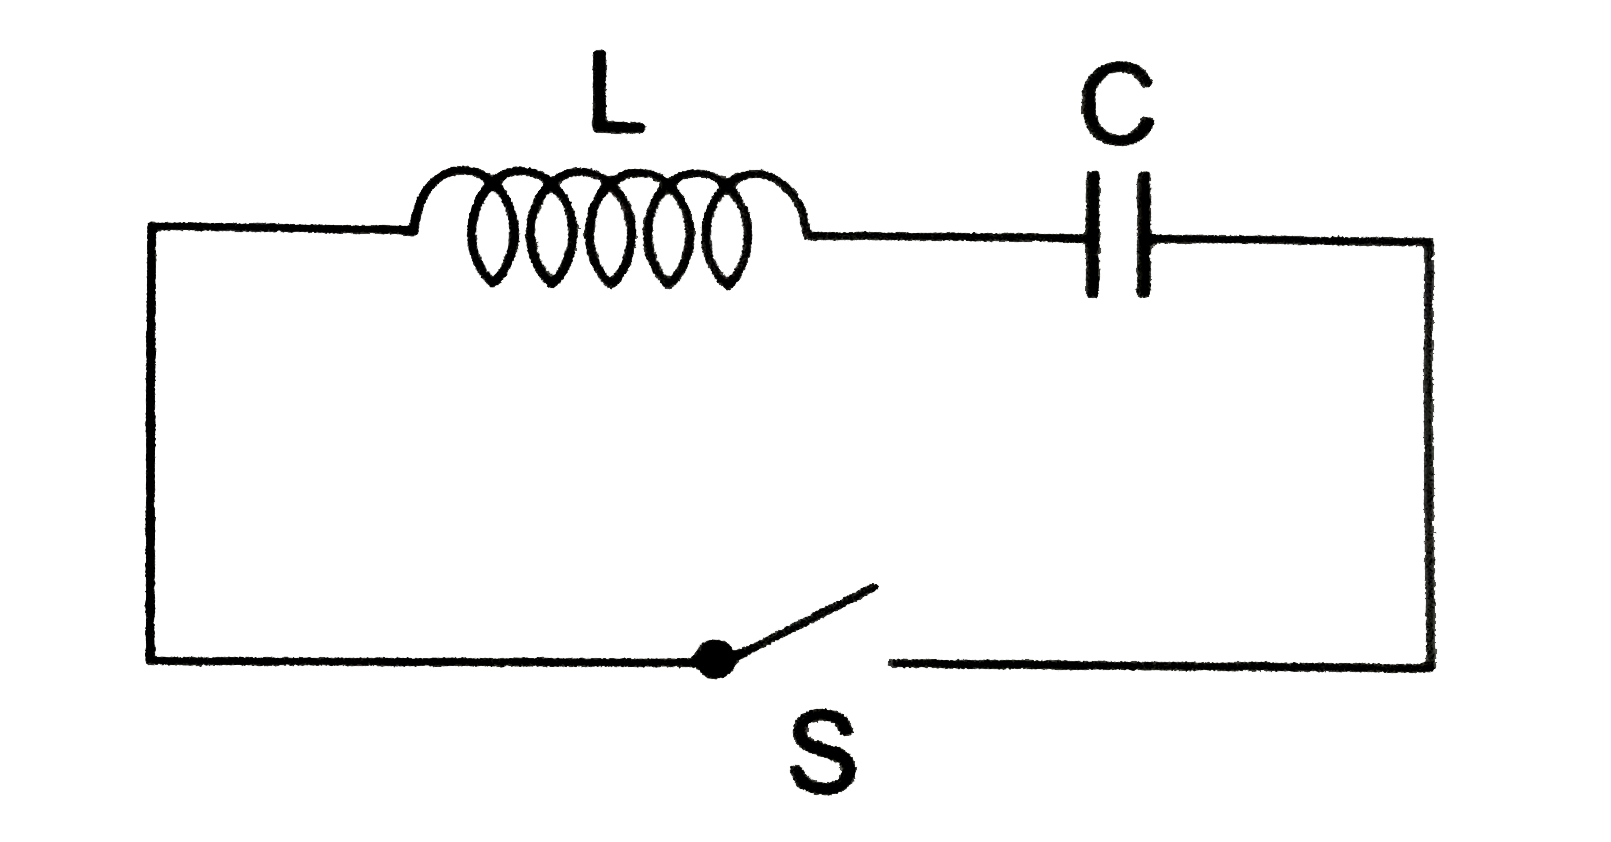 प्रदर्शित संधारित्र C को V (0 ) विभव तक आवेशित कर प्रतित्र L तथा स्विच S के साथ जोड़ दिया गया है। स्विच को समय t = 0 पर बंद कर दिया गया है। विधुत दोलन के क्रम में